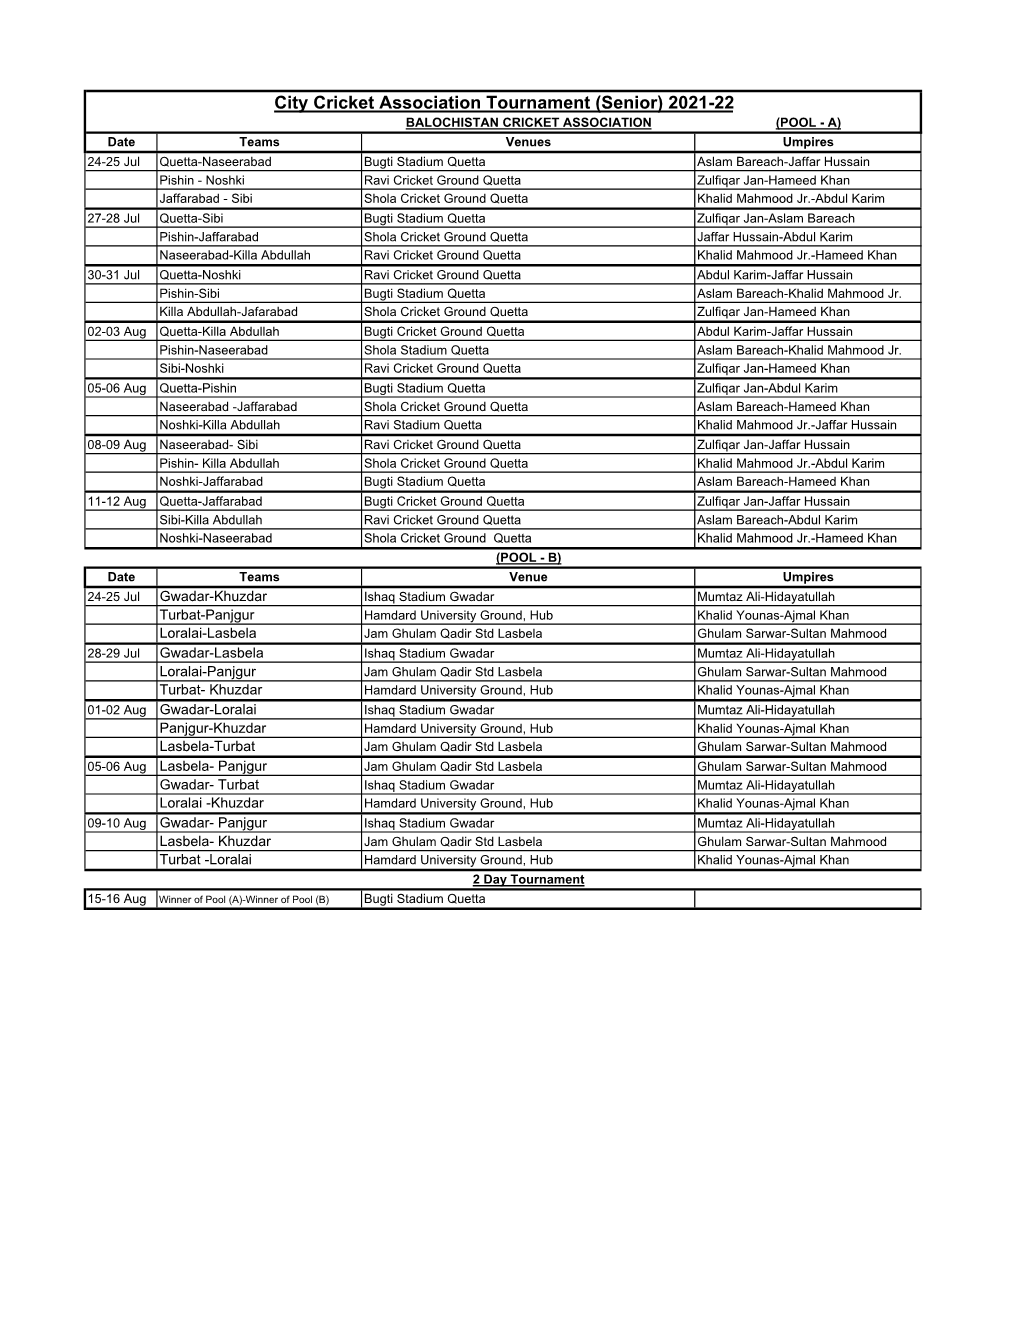 Copy of Schedules of CCA Senior Tournament 2021-22